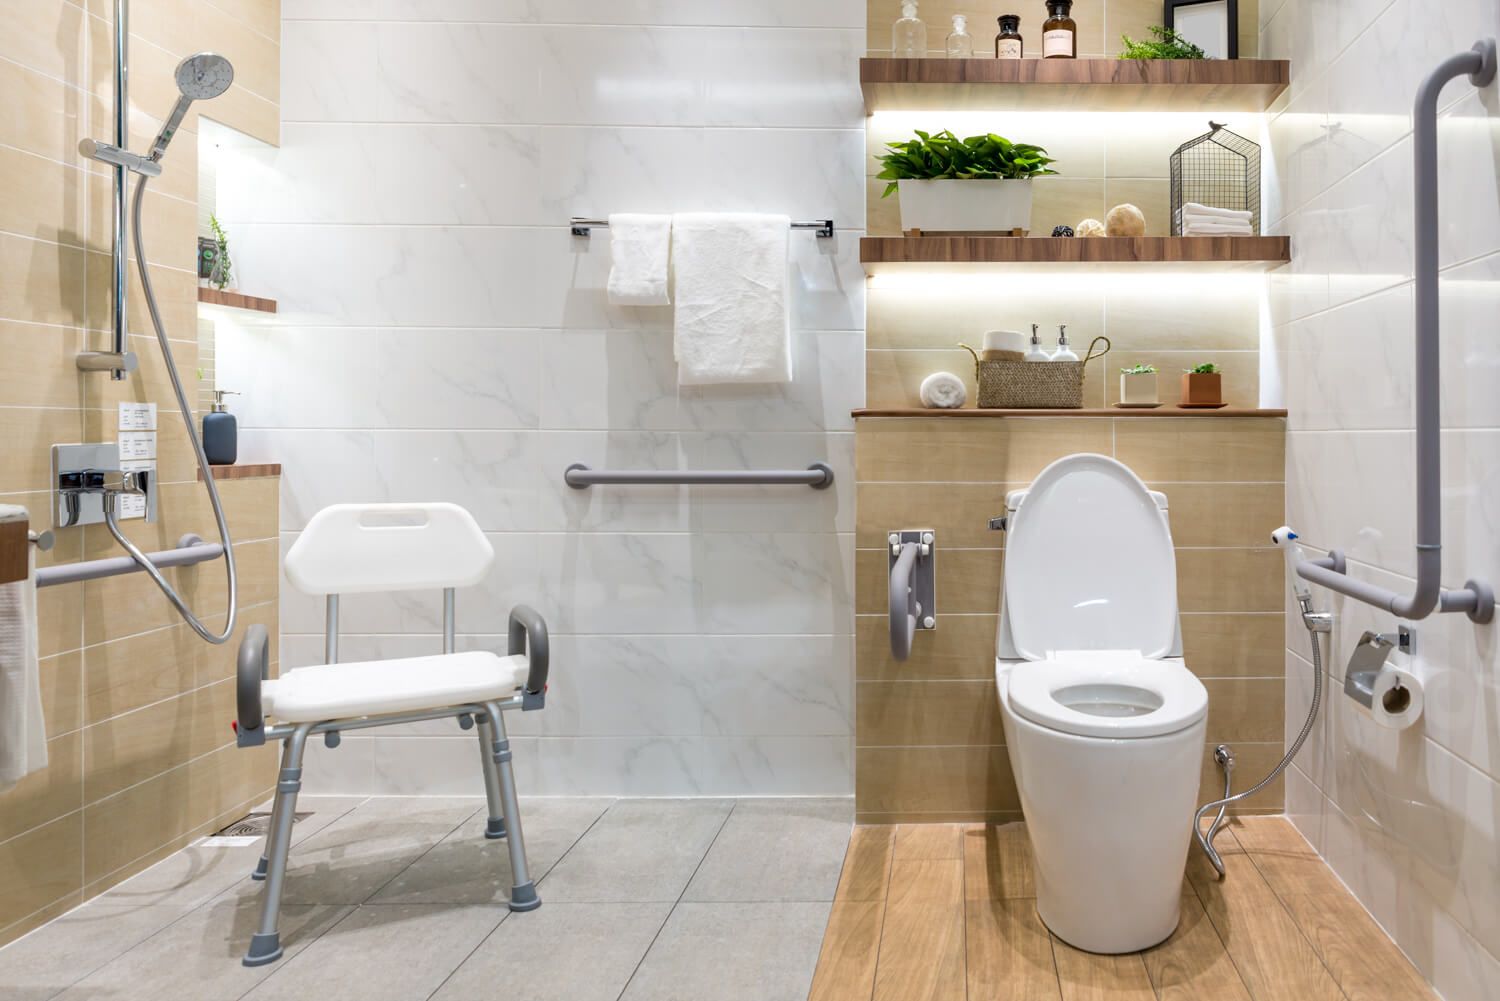 Foto eines Badezimmers mit diversen barrierefreien Elementen wie einer ebenerdigen Dusche, Griffen und Handläufen an den Wänden und einem Duschstuhl